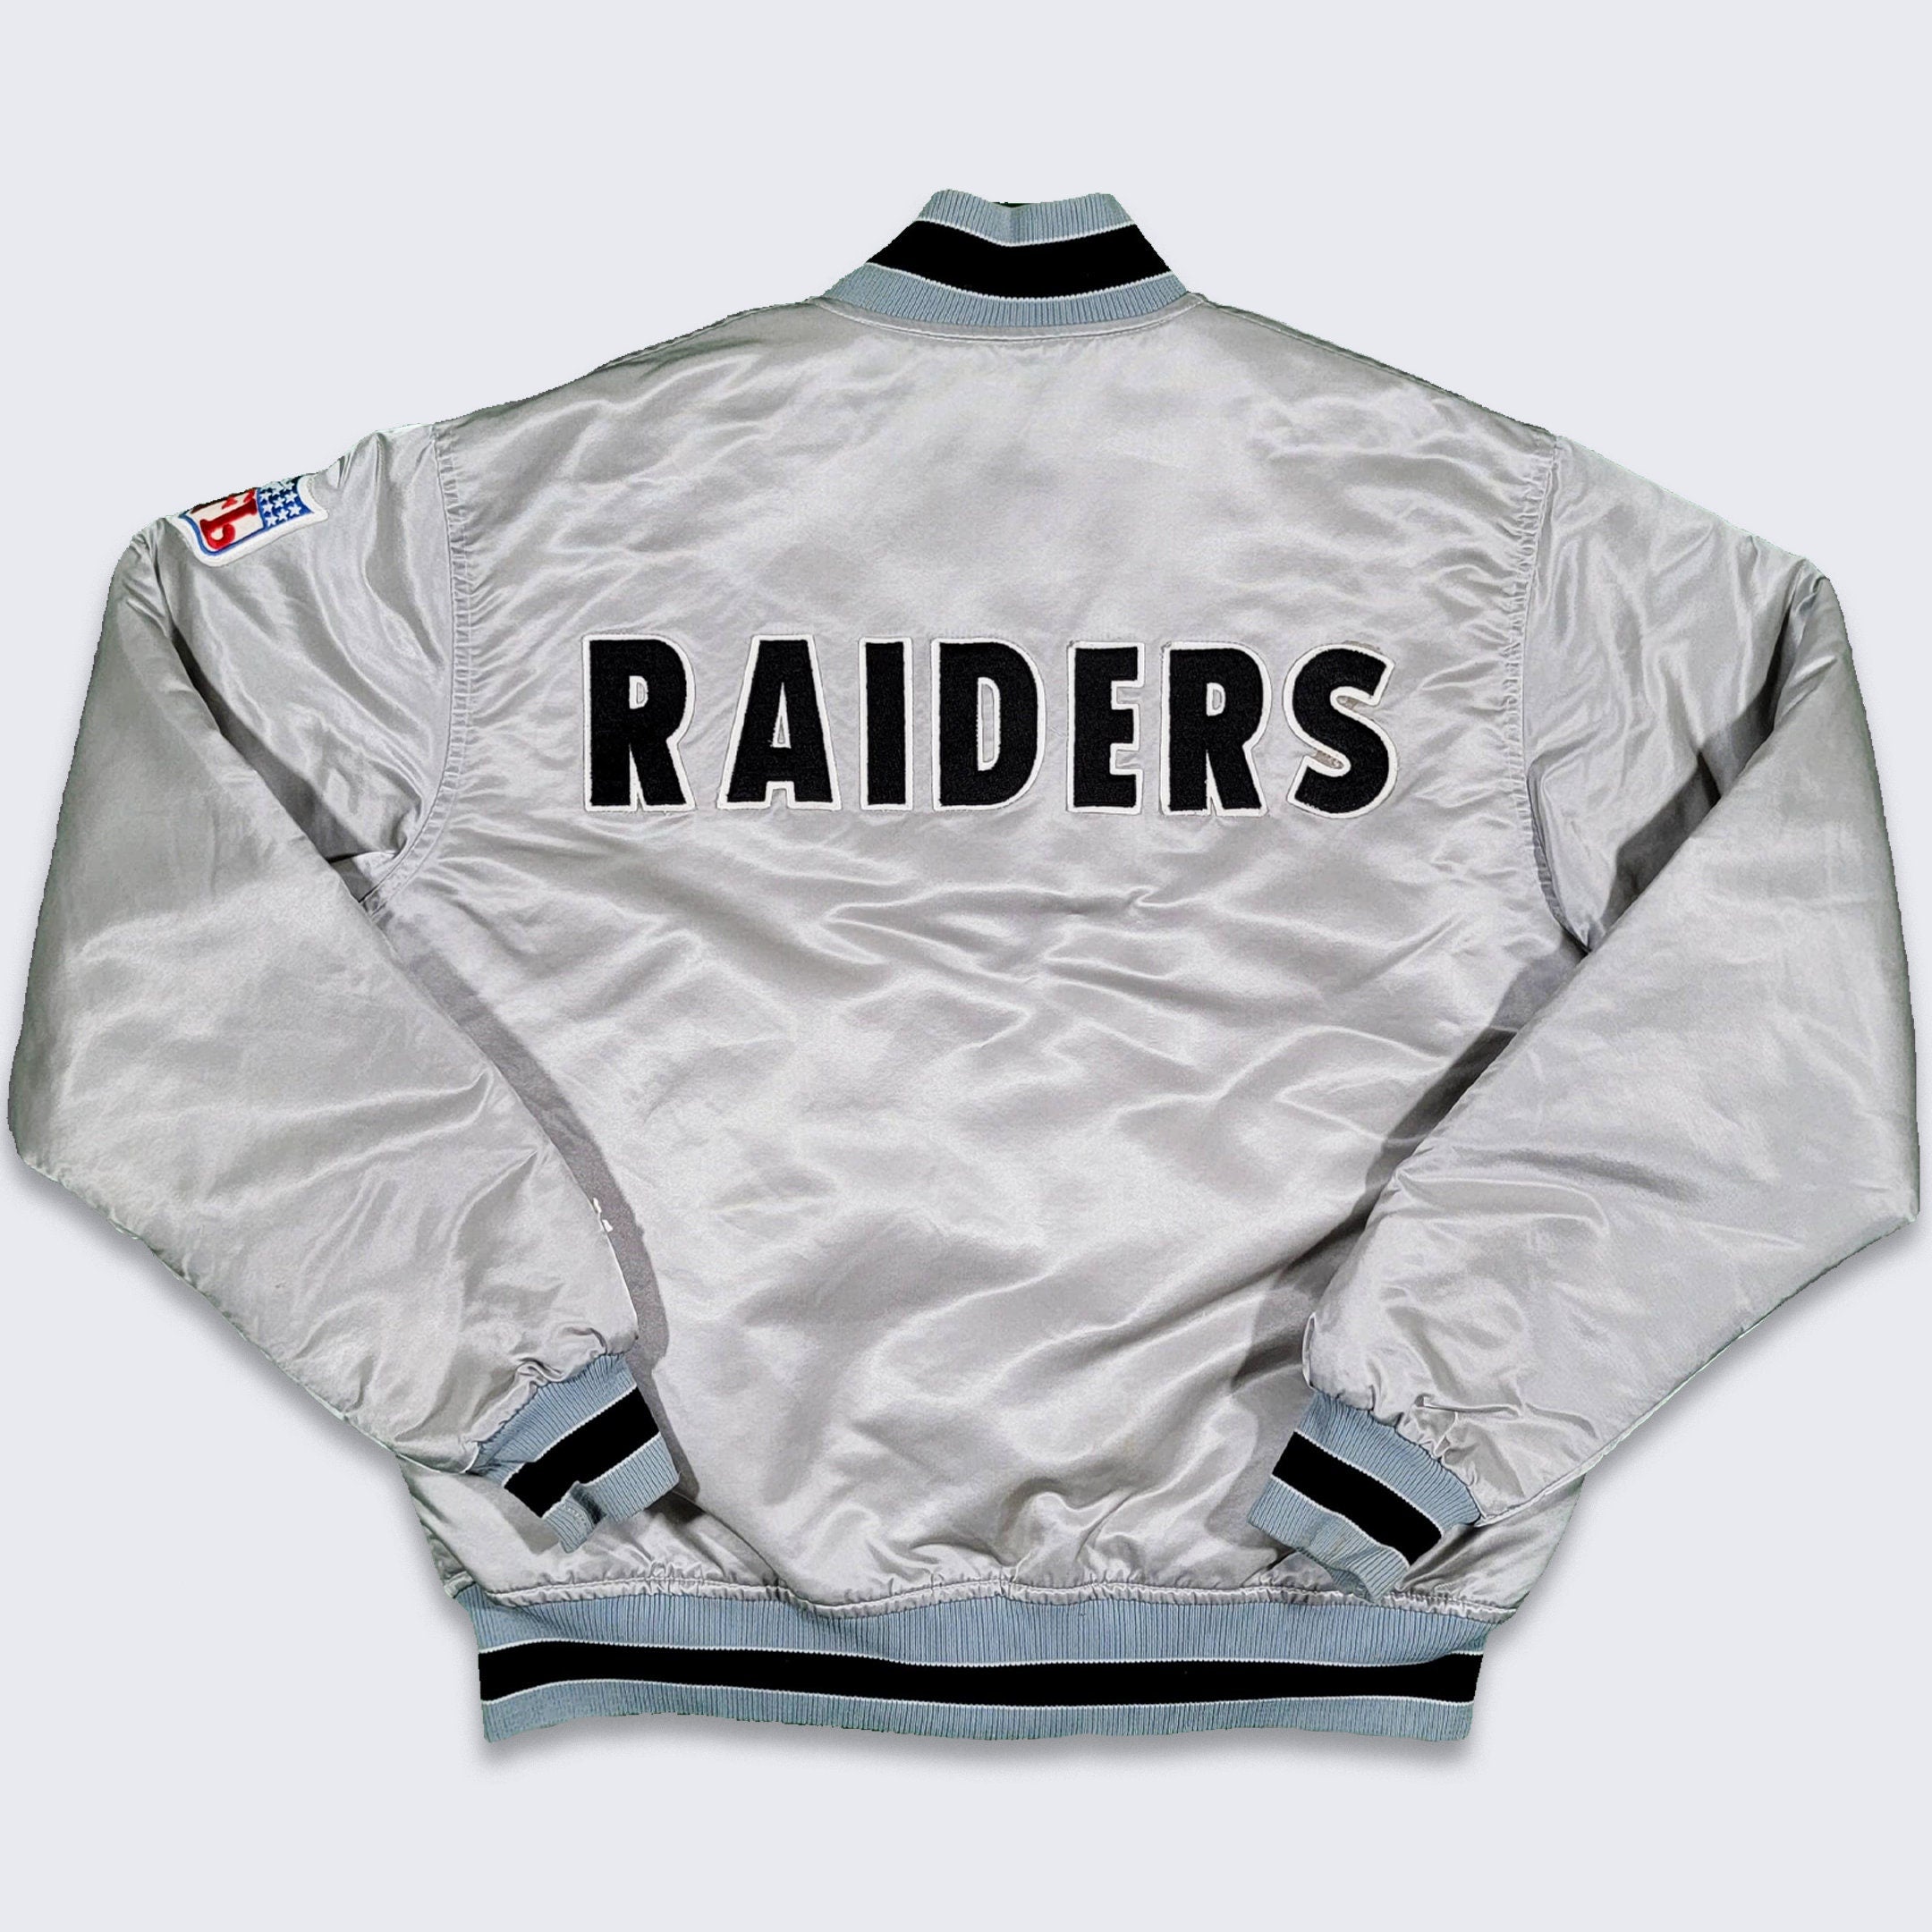 Vintage Oakland Raiders Bomber Jacket Made Usa Size Xtra Large 